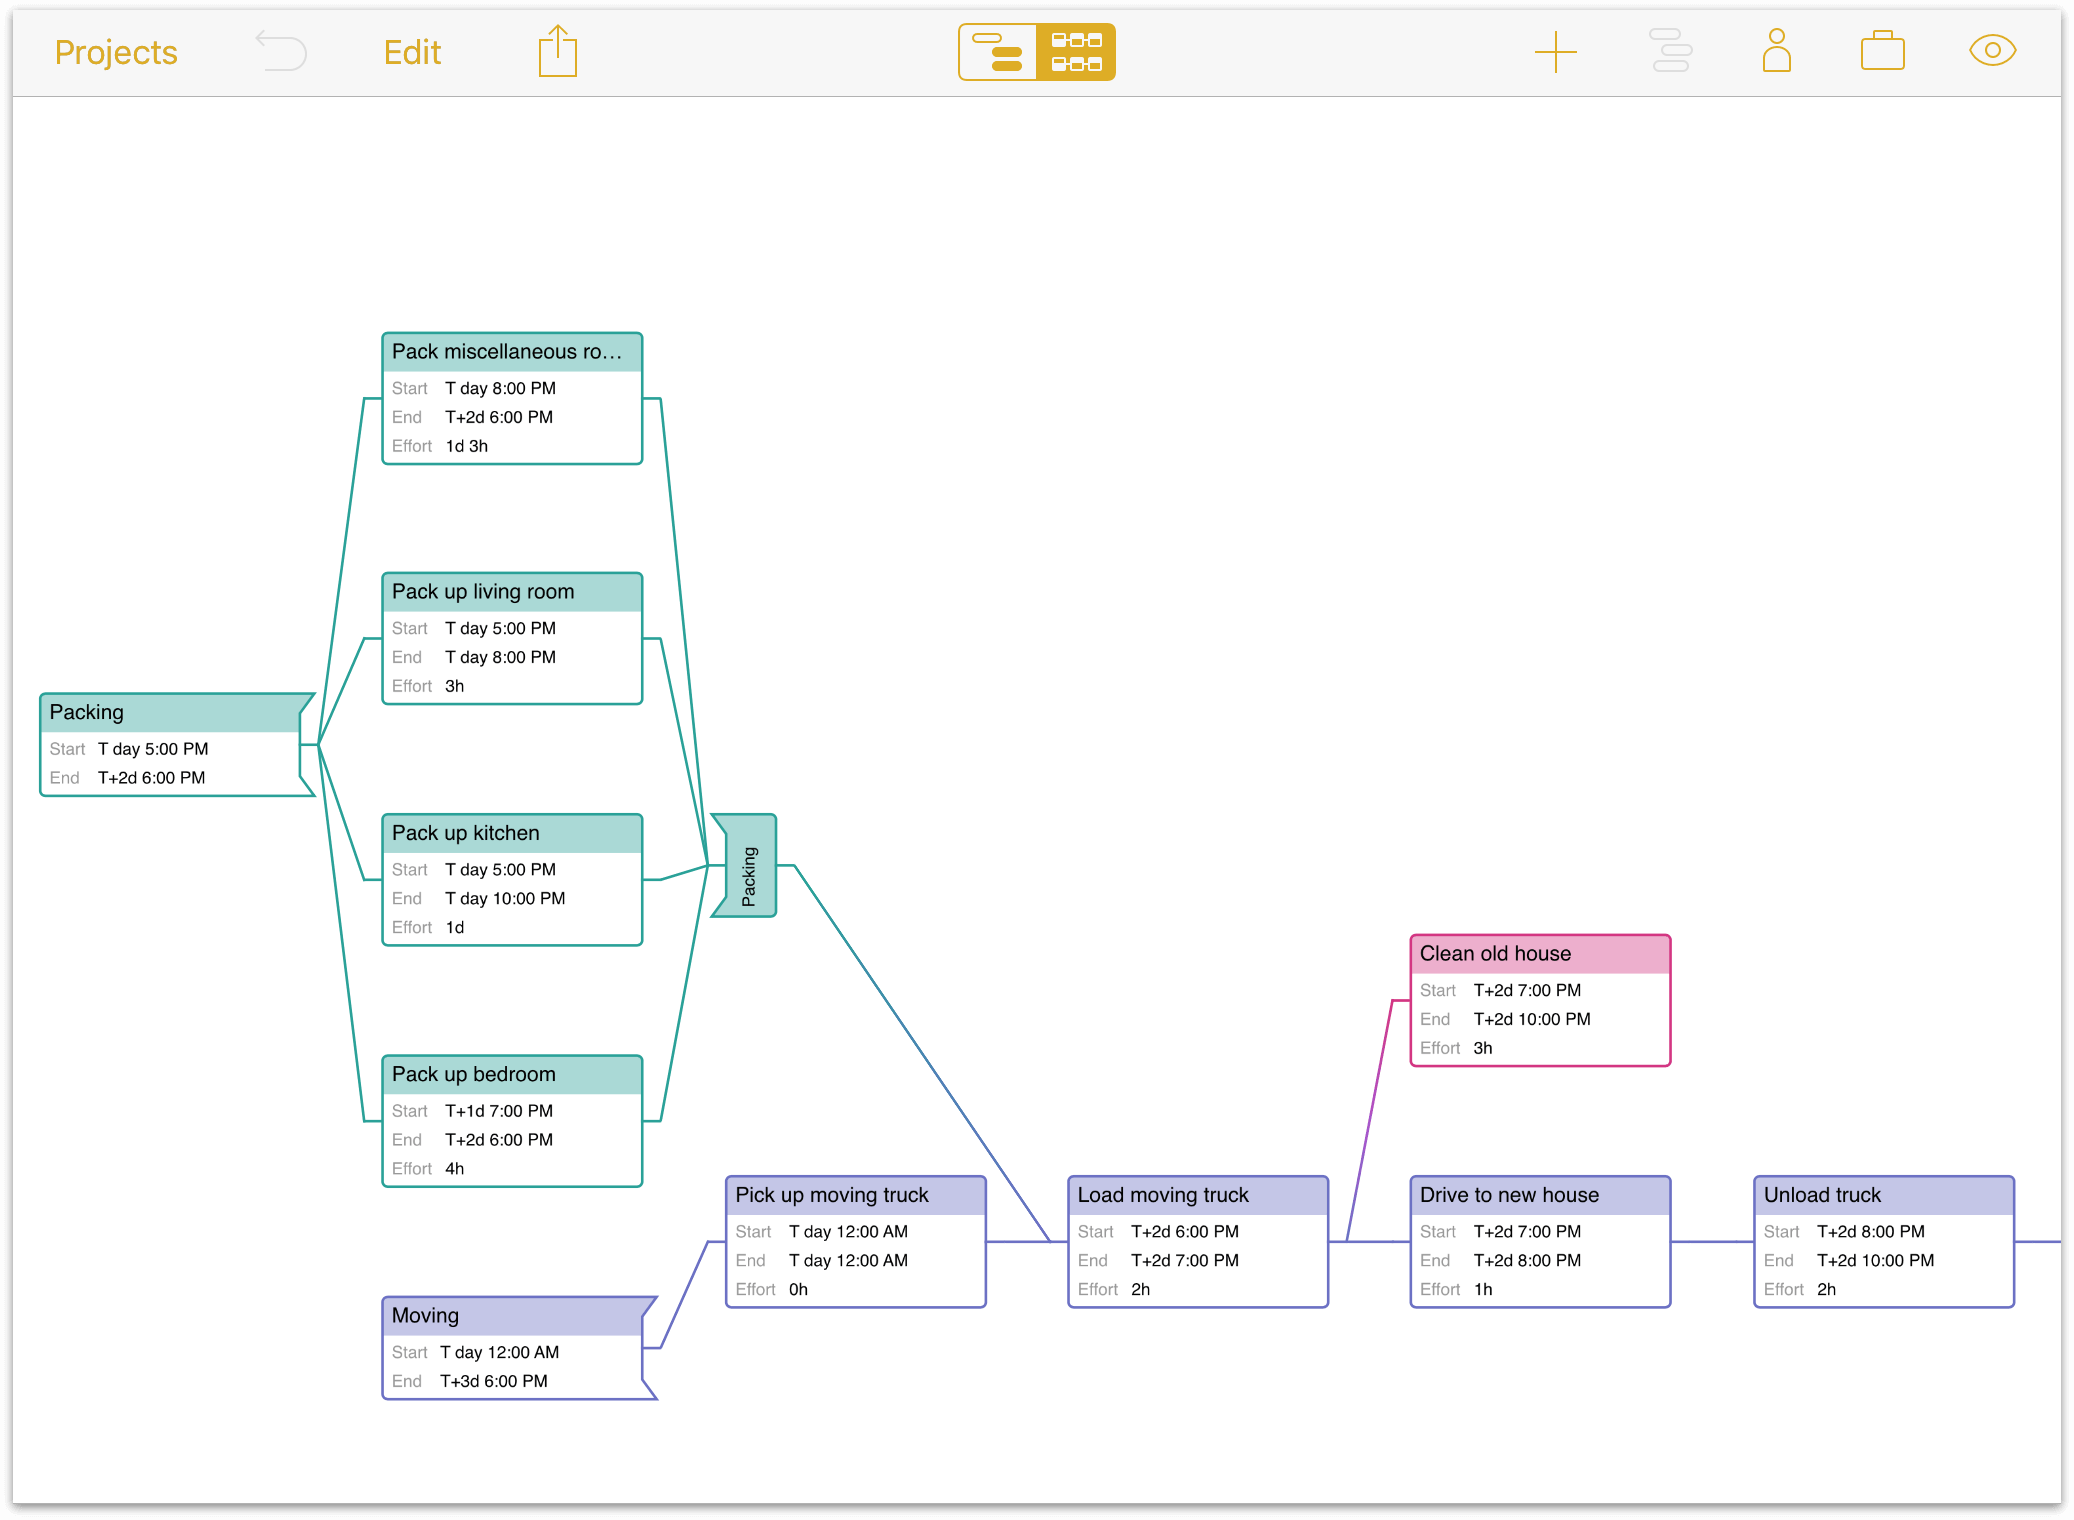 Gantt Chart Vs Network Diagram